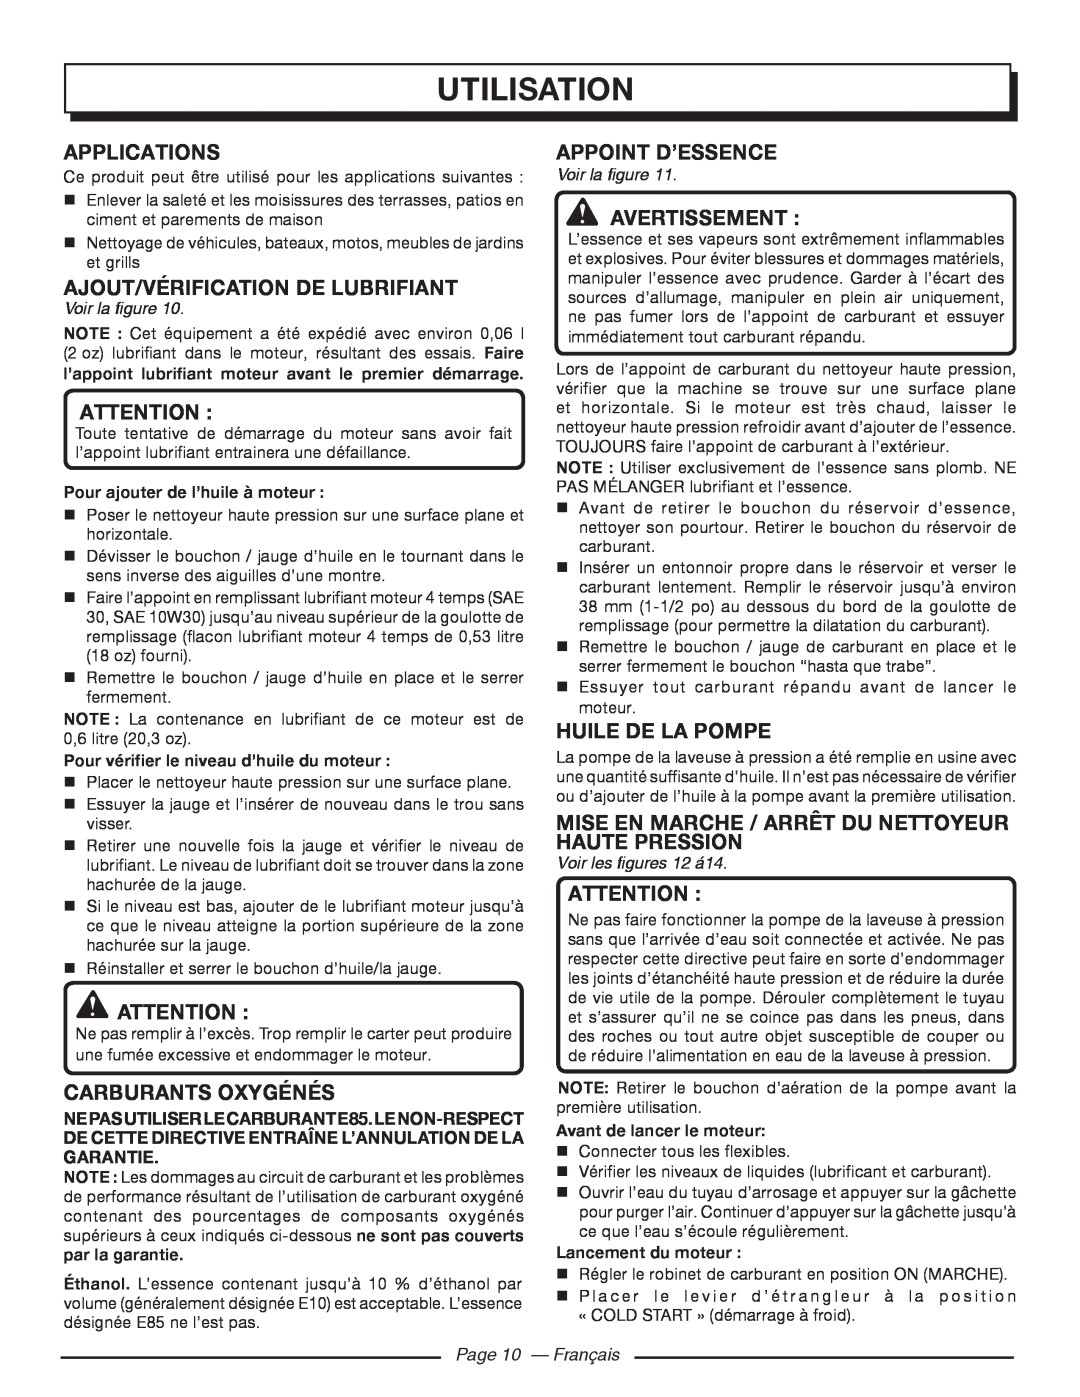 Homelite UT80522 Ajout/Vérification De Lubrifiant, Carburants Oxygénés, Appoint D’Essence, Huile De La Pompe, Attention  